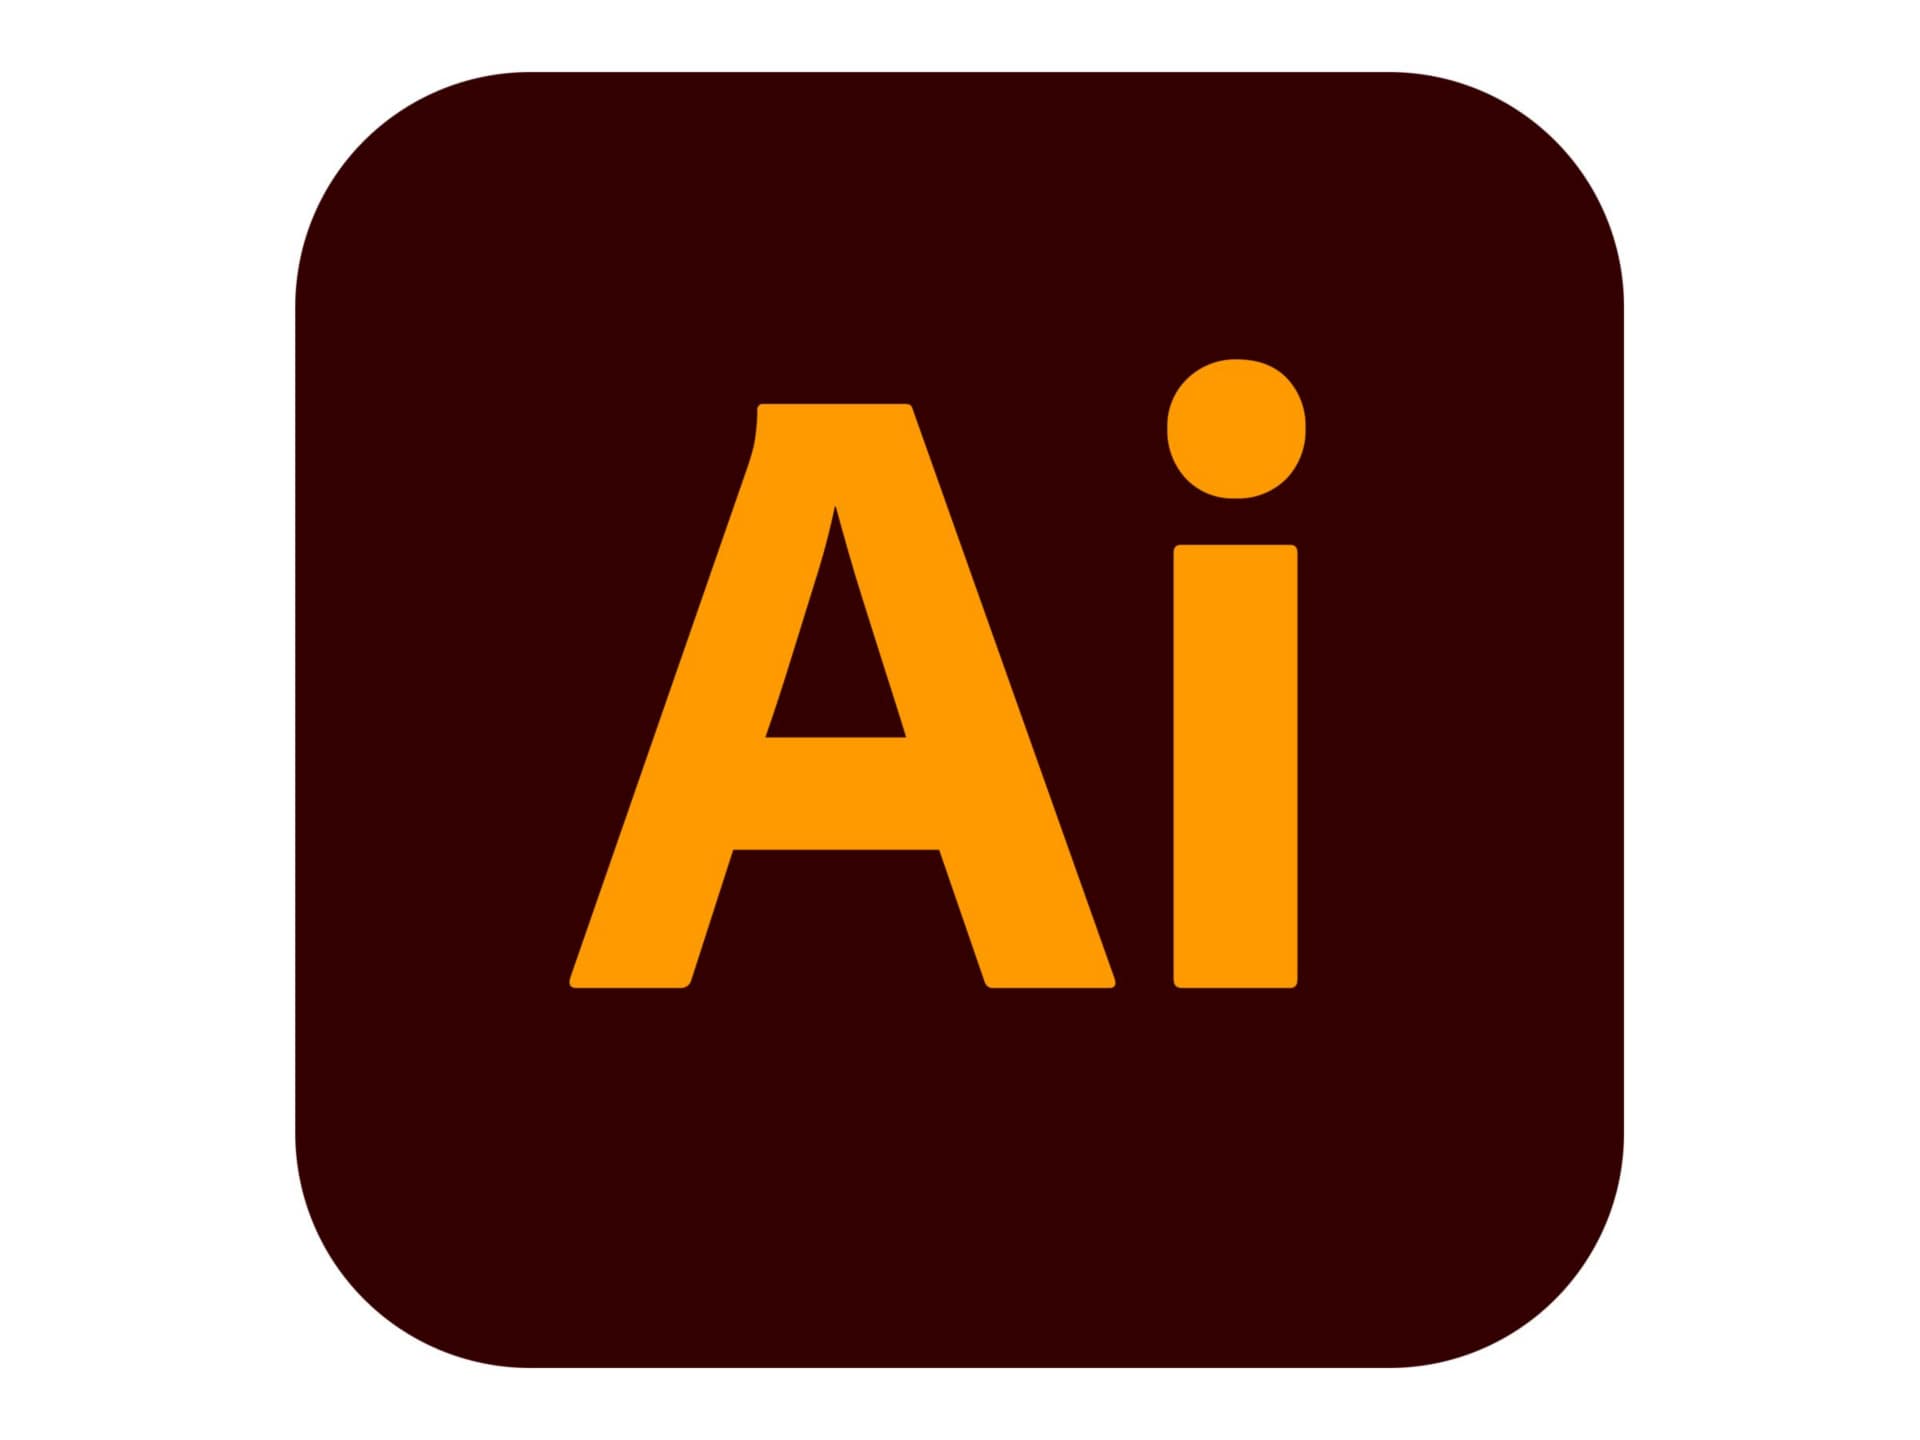 Adobe Illustrator CC for Enterprise - Subscription New - 1 user